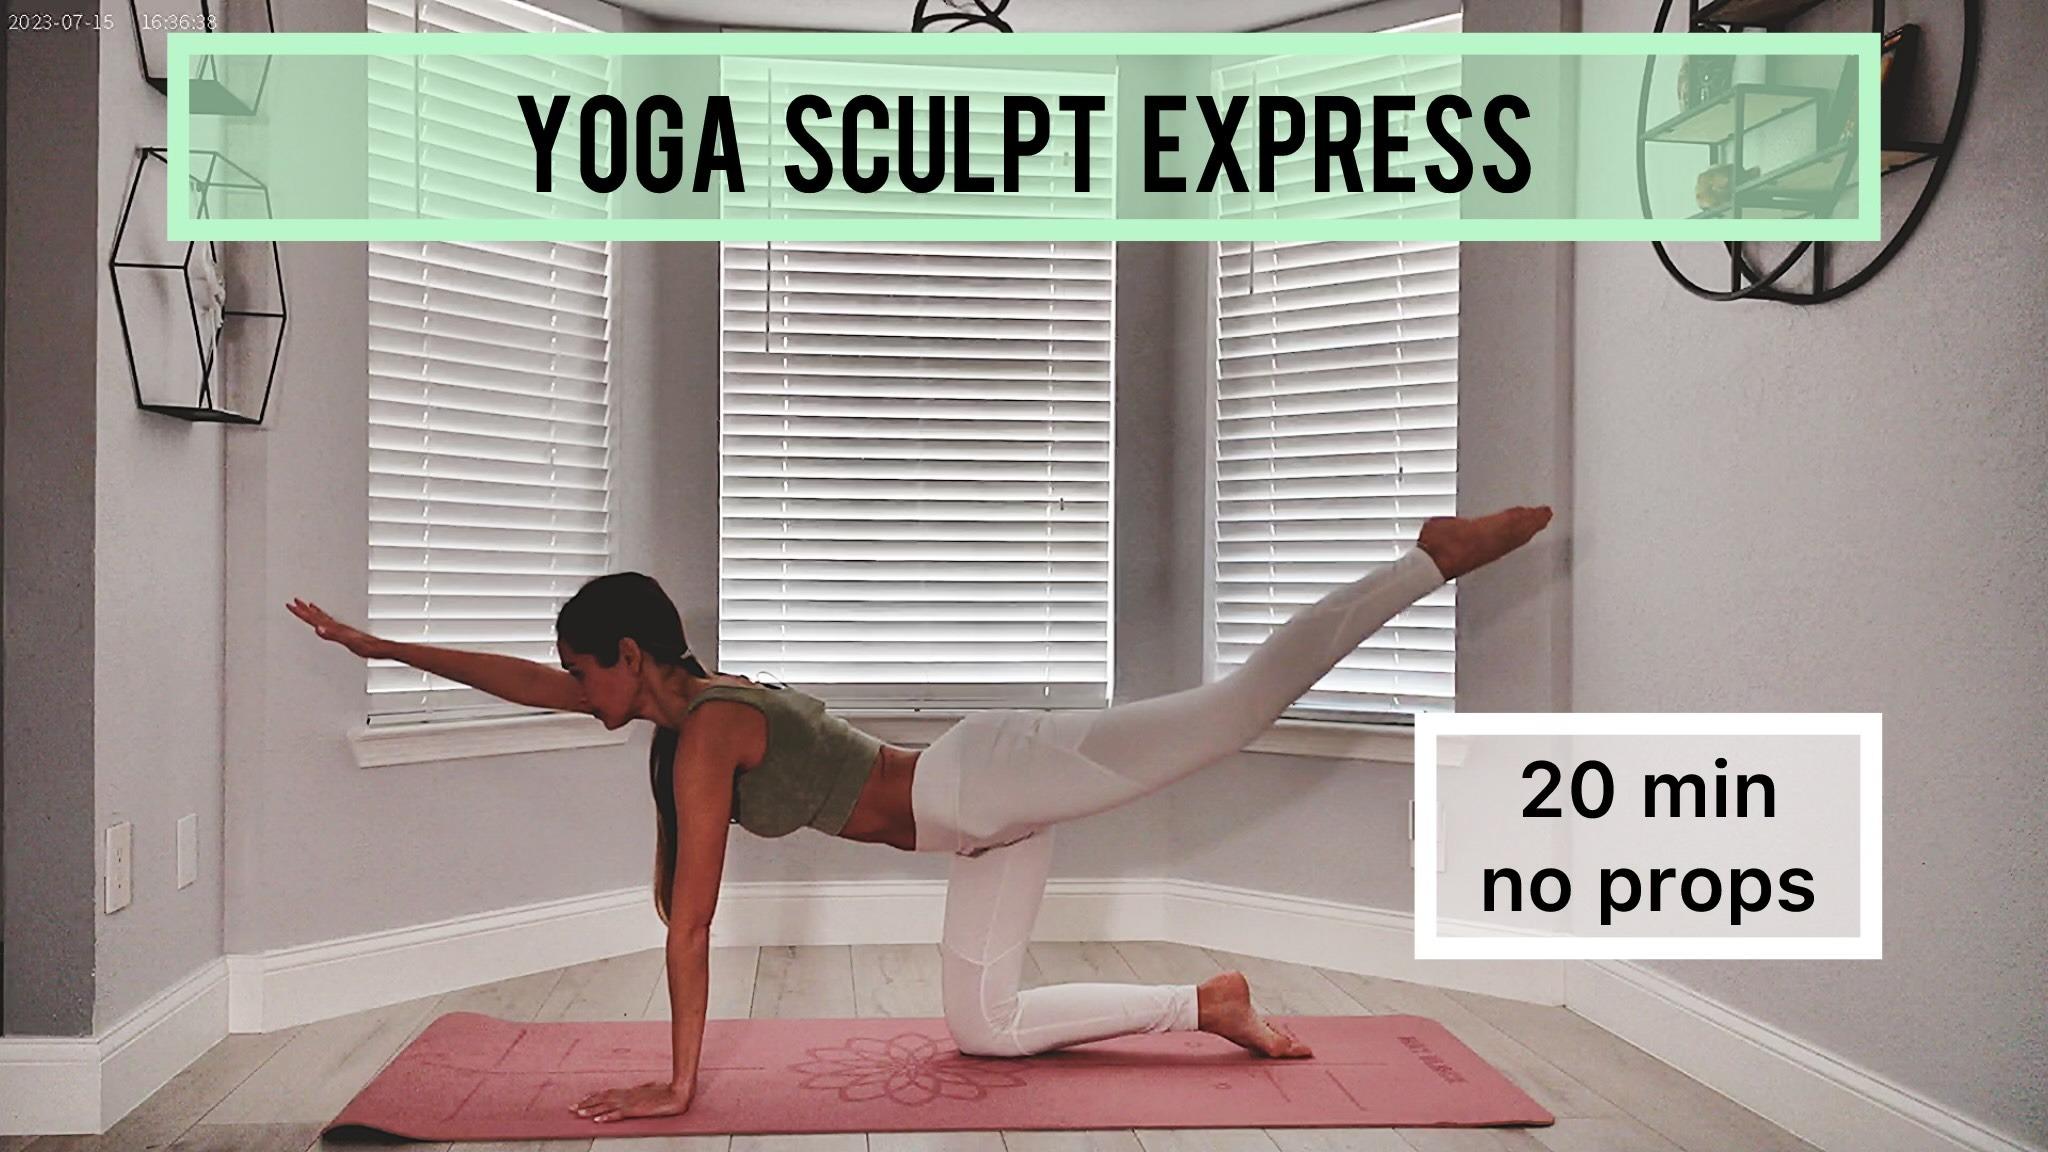 Yoga sculpt express